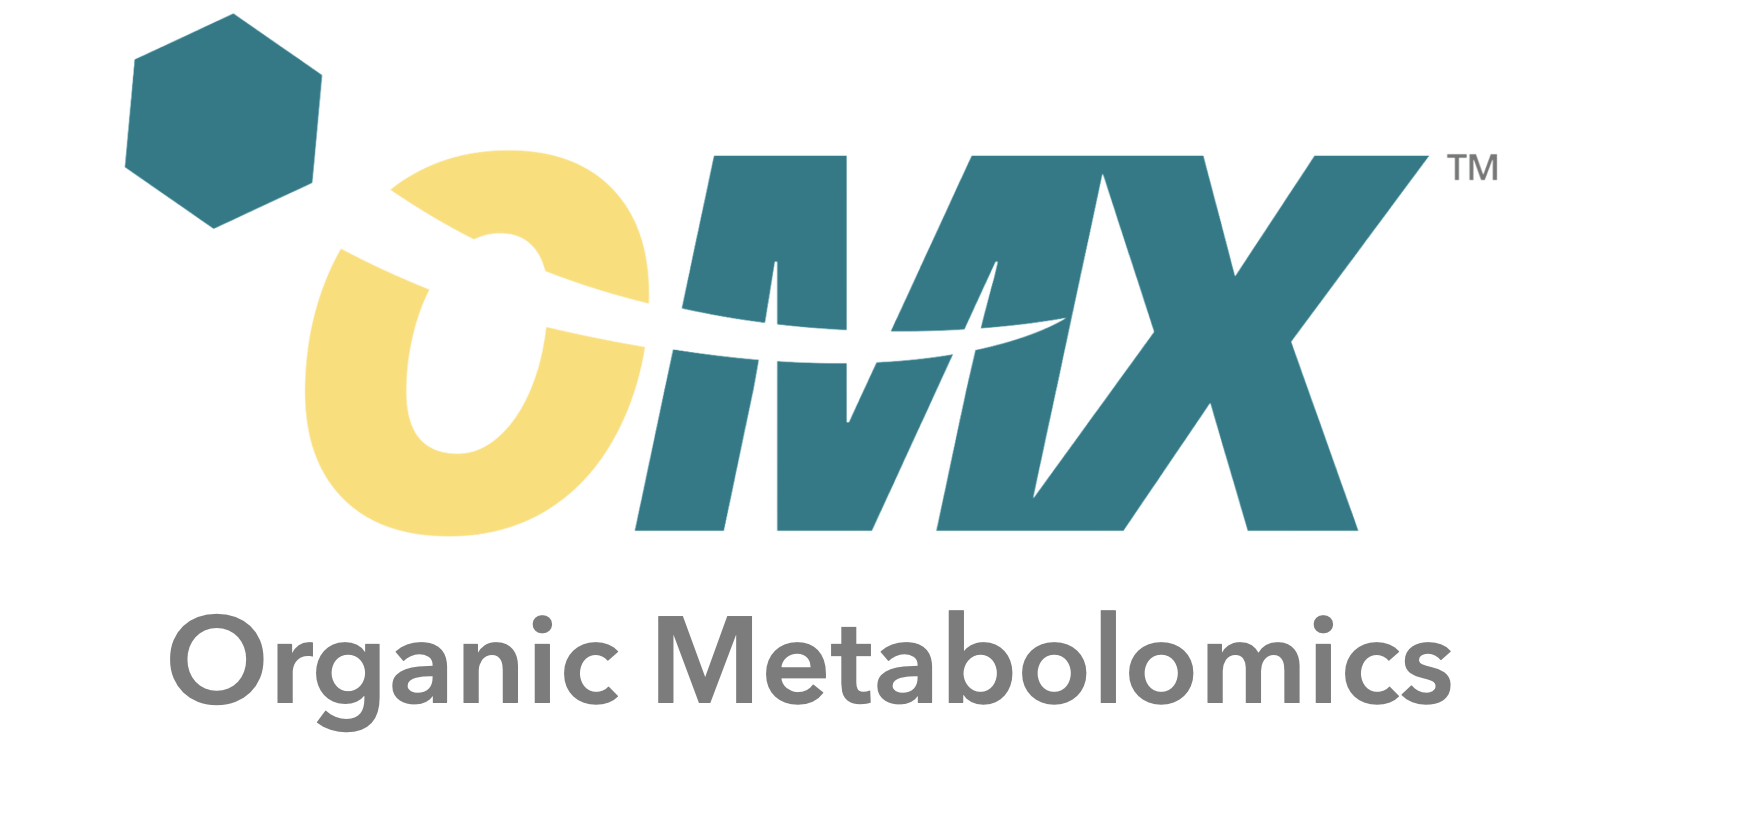 OMX Logo